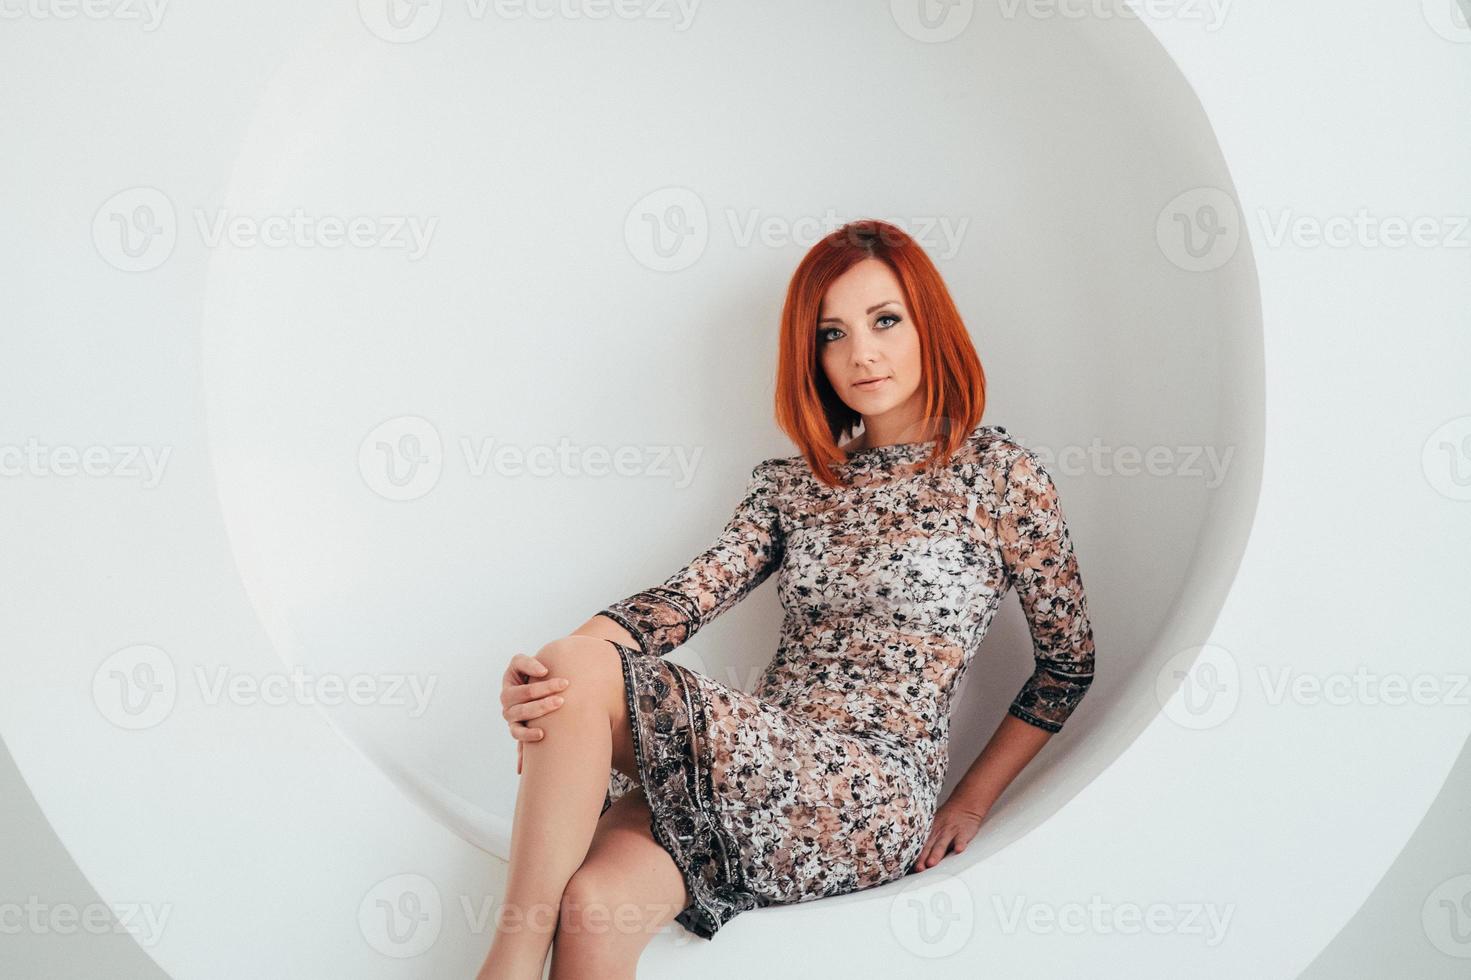 roodharige model meisje op een witte cirkel achtergrond foto